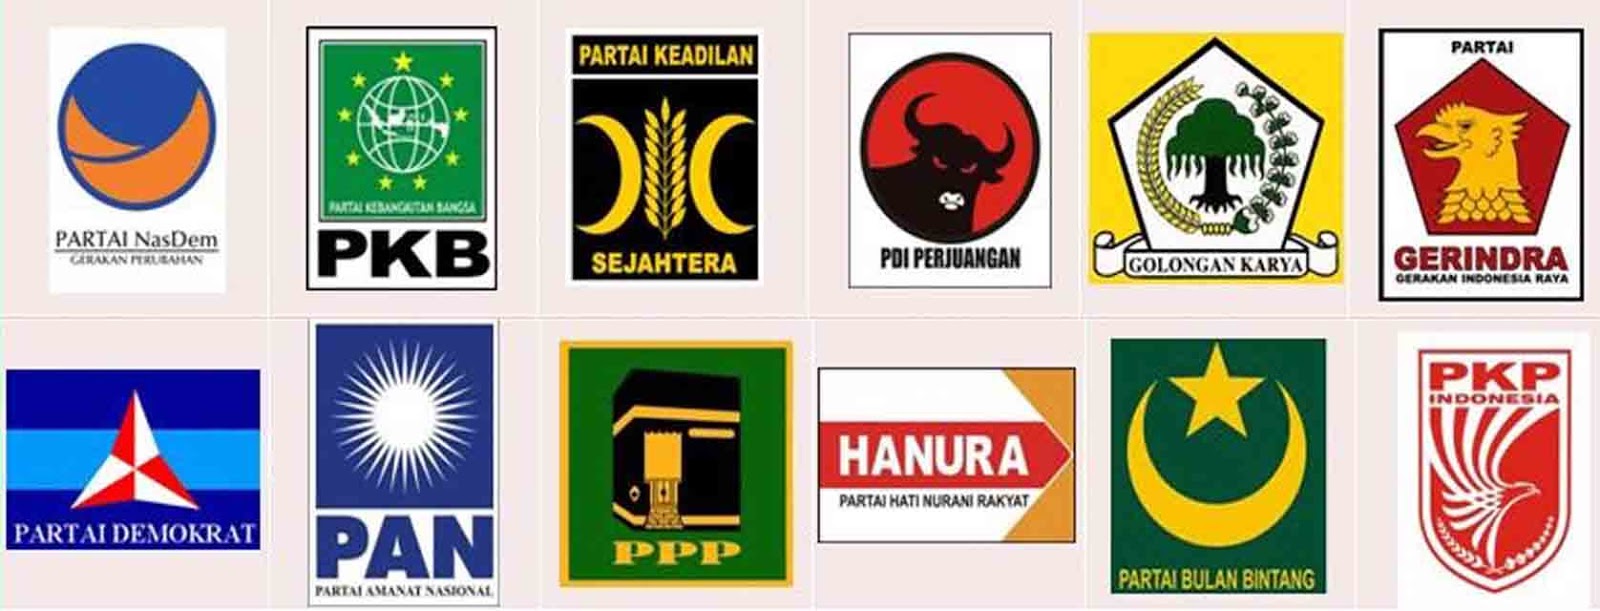 Perkembangan Partai Politik di Indonesia Masa ke Masa - Gurugeografi.id